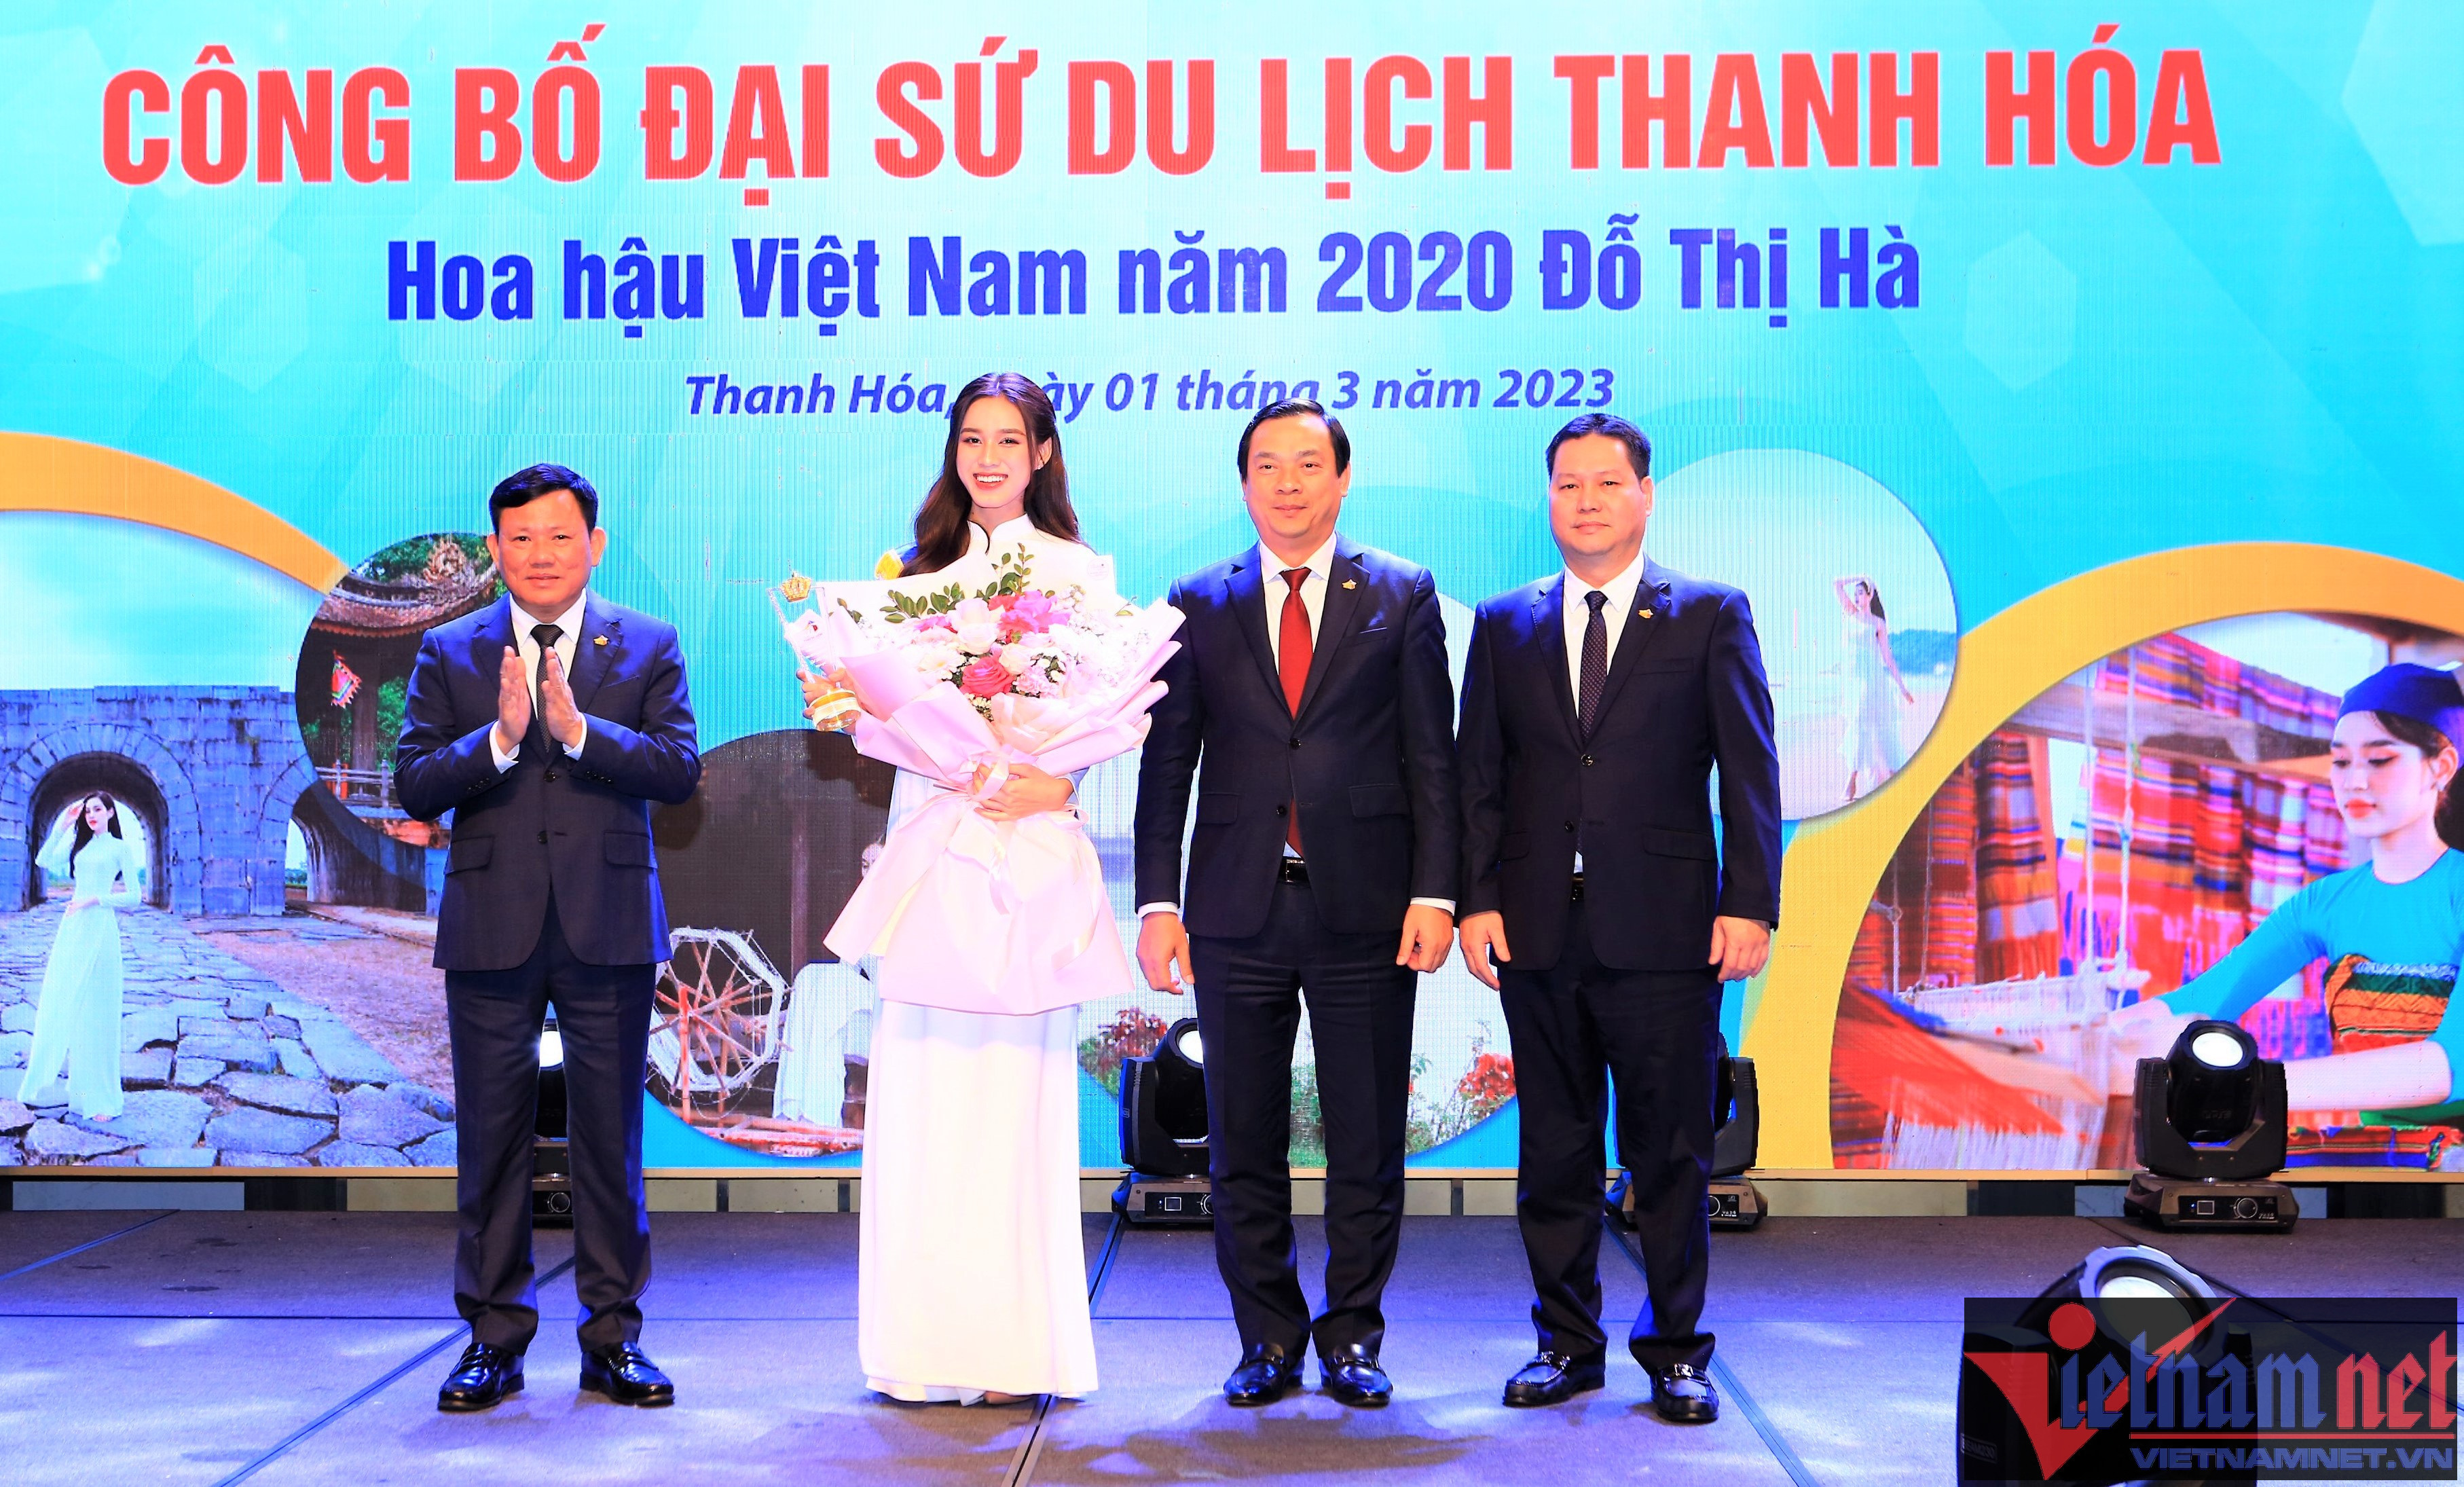 Hoa hậu Đỗ Thị Hà làm đại sứ du lịch tỉnh Thanh Hóa